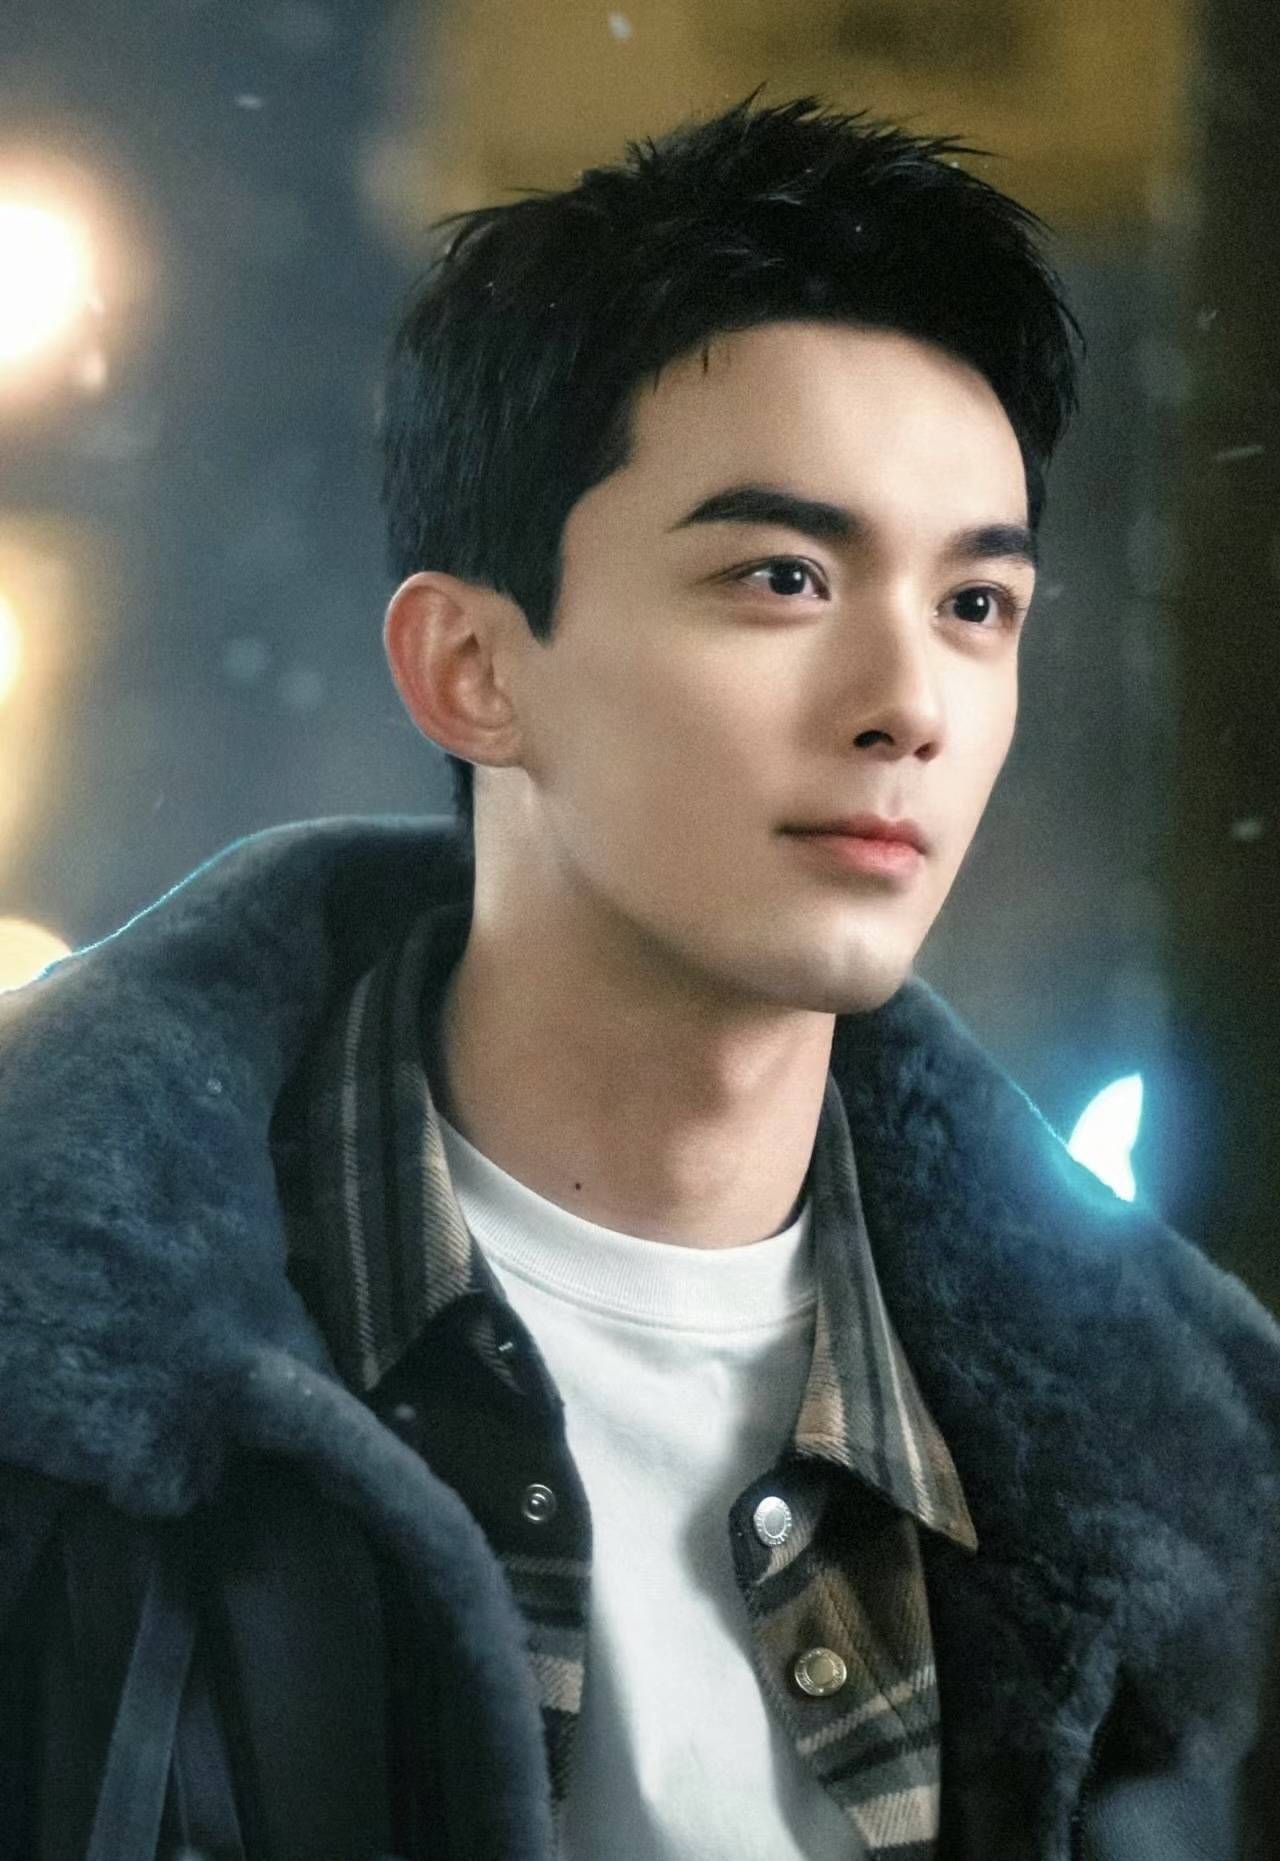 1 李现:李现是一位中国内地男演员,他的外貌英俊,阳光,深受粉丝喜爱